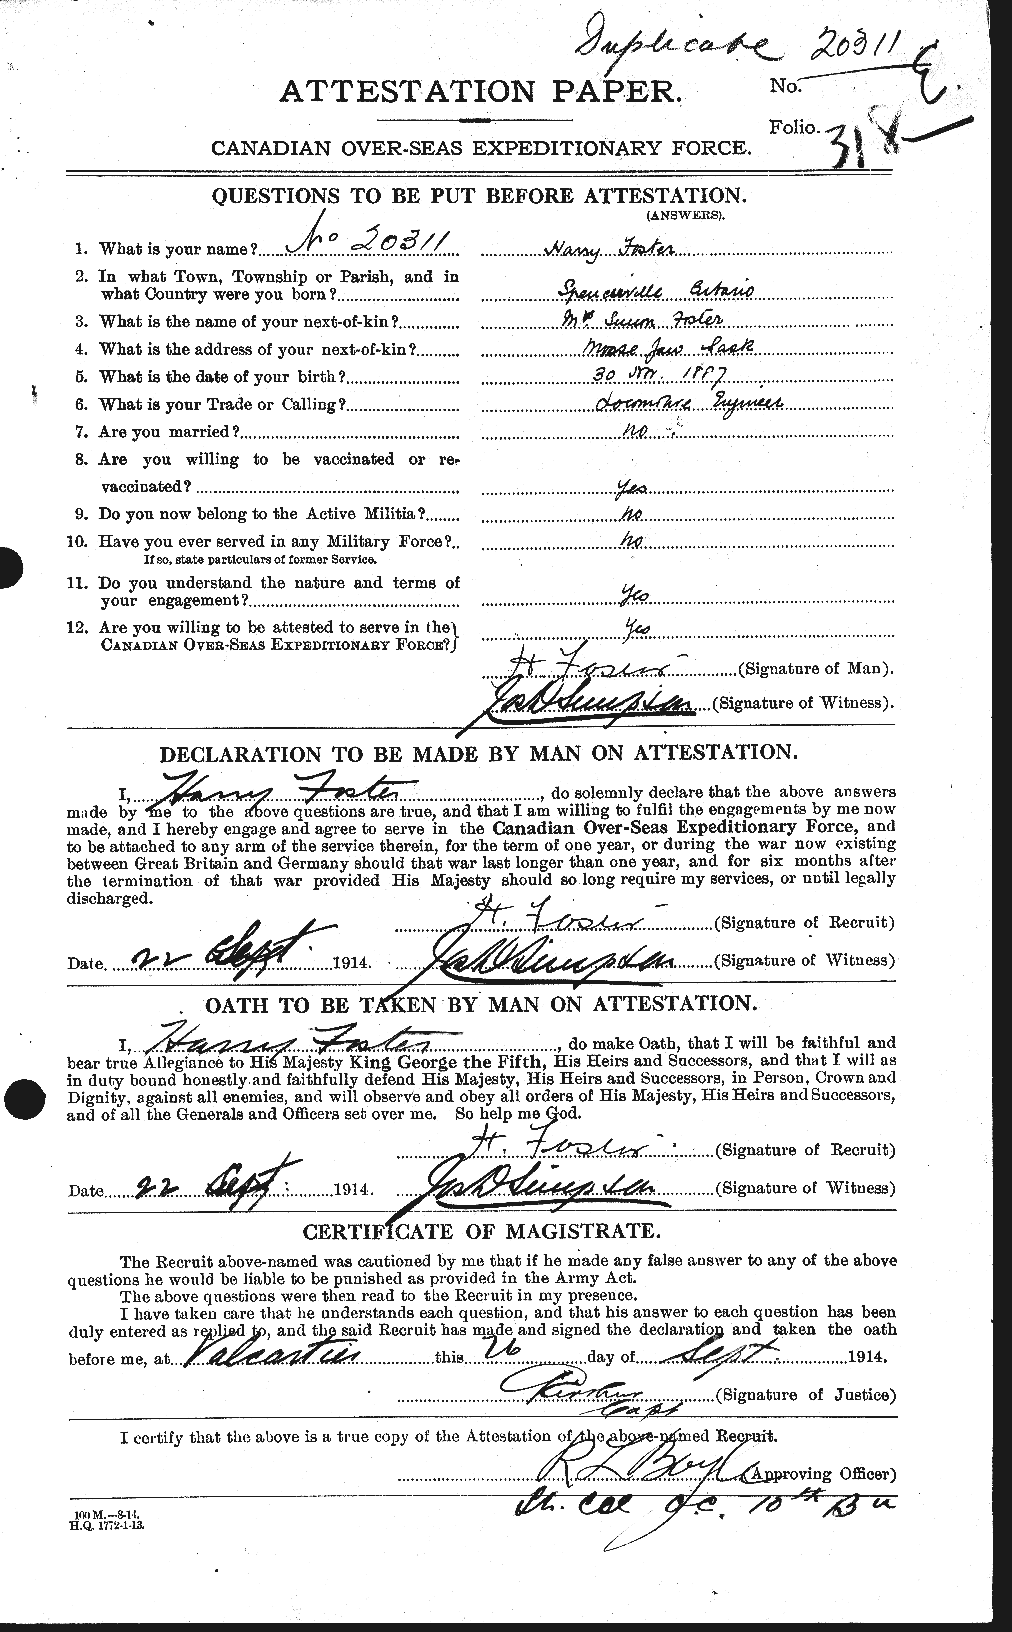 Dossiers du Personnel de la Première Guerre mondiale - CEC 330734a